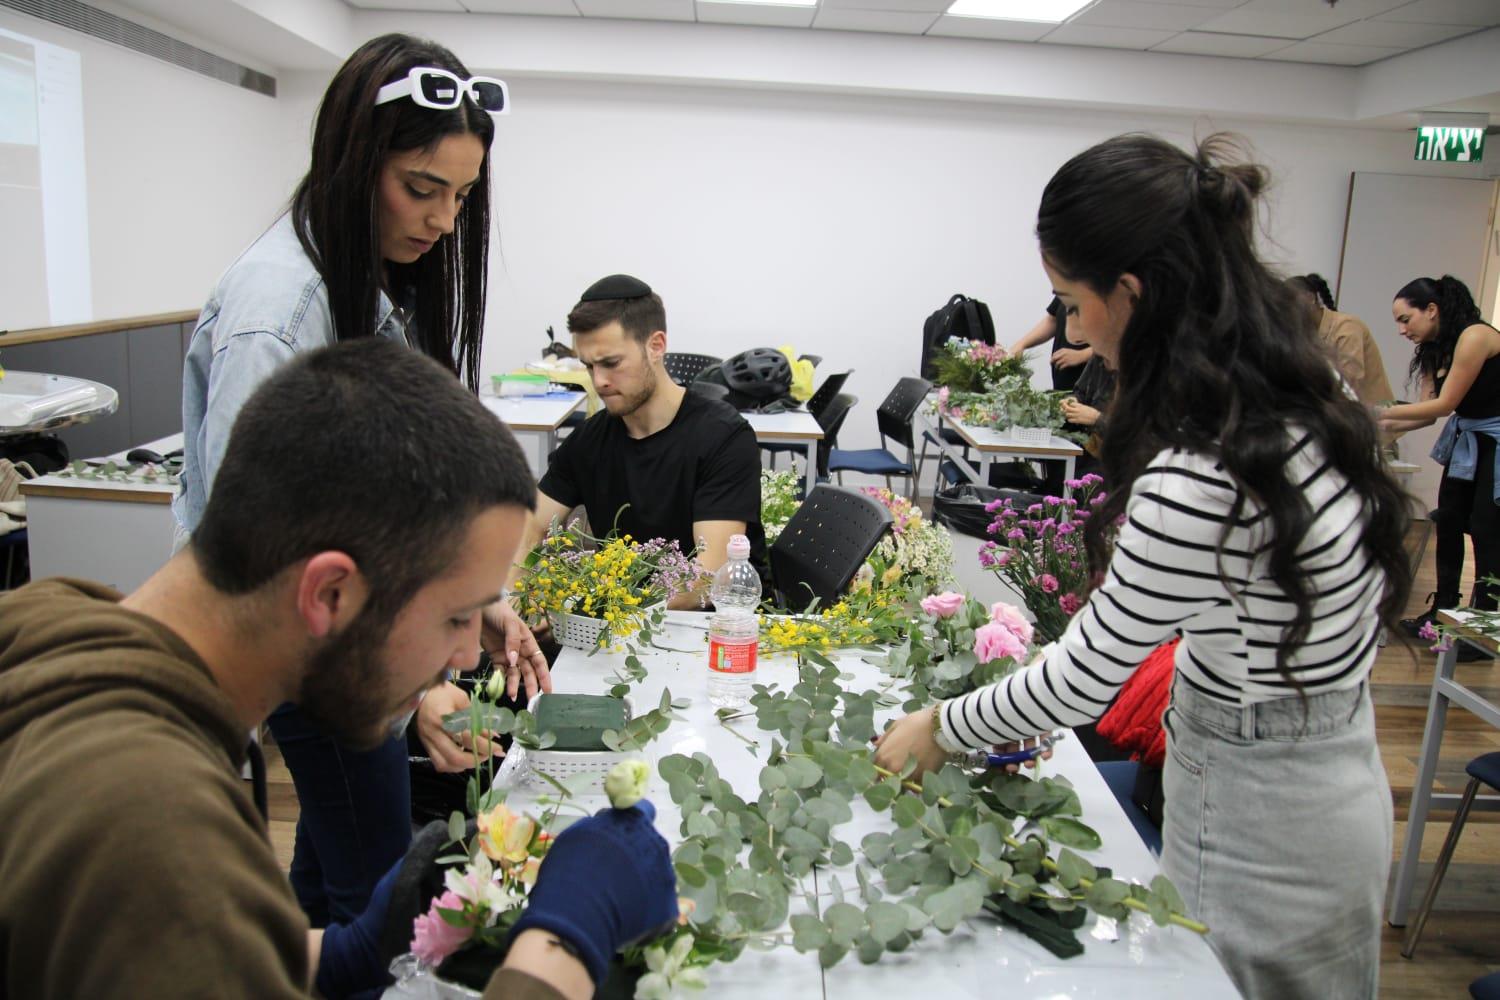 גלרייה - שיעור עיצוב ושזירת פרחים בקורס ניהול עיצוב והפקת אירועים מחזור 33, 12 מתוך 22